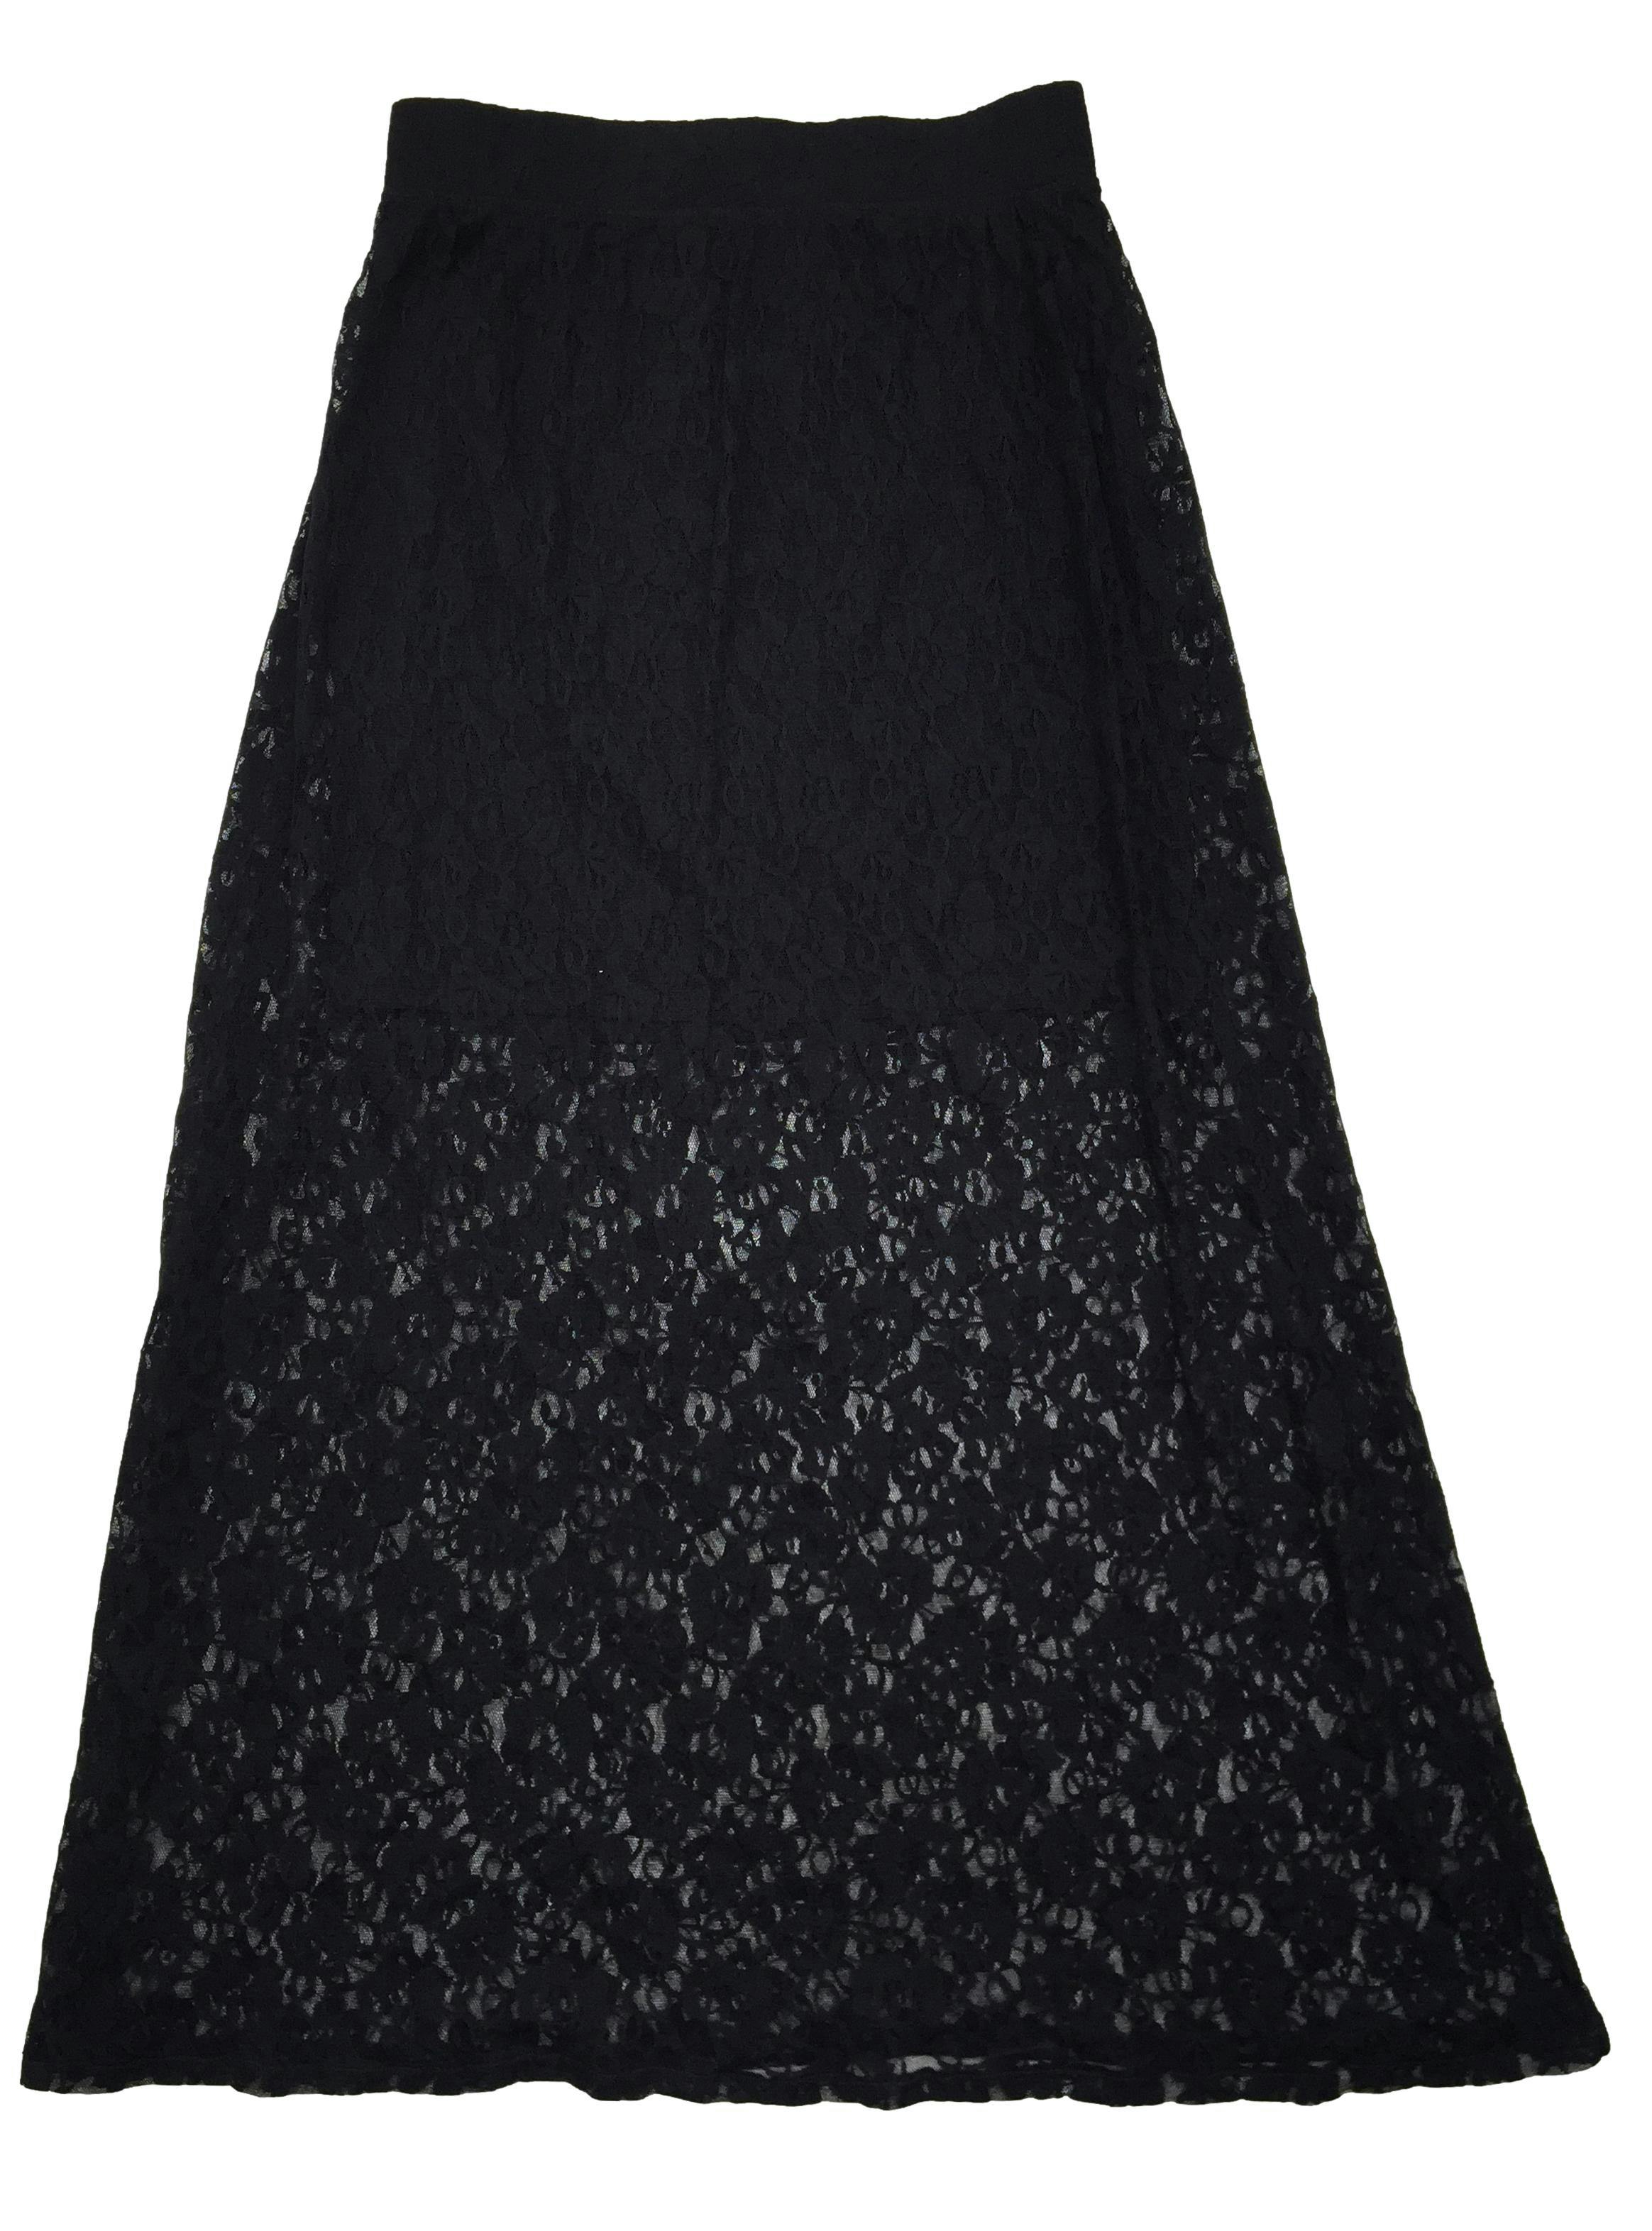 Falda Sybilla negra de encaje con forro interior, pretina elástica. Cintura 70 cm, Largo 102 cm.